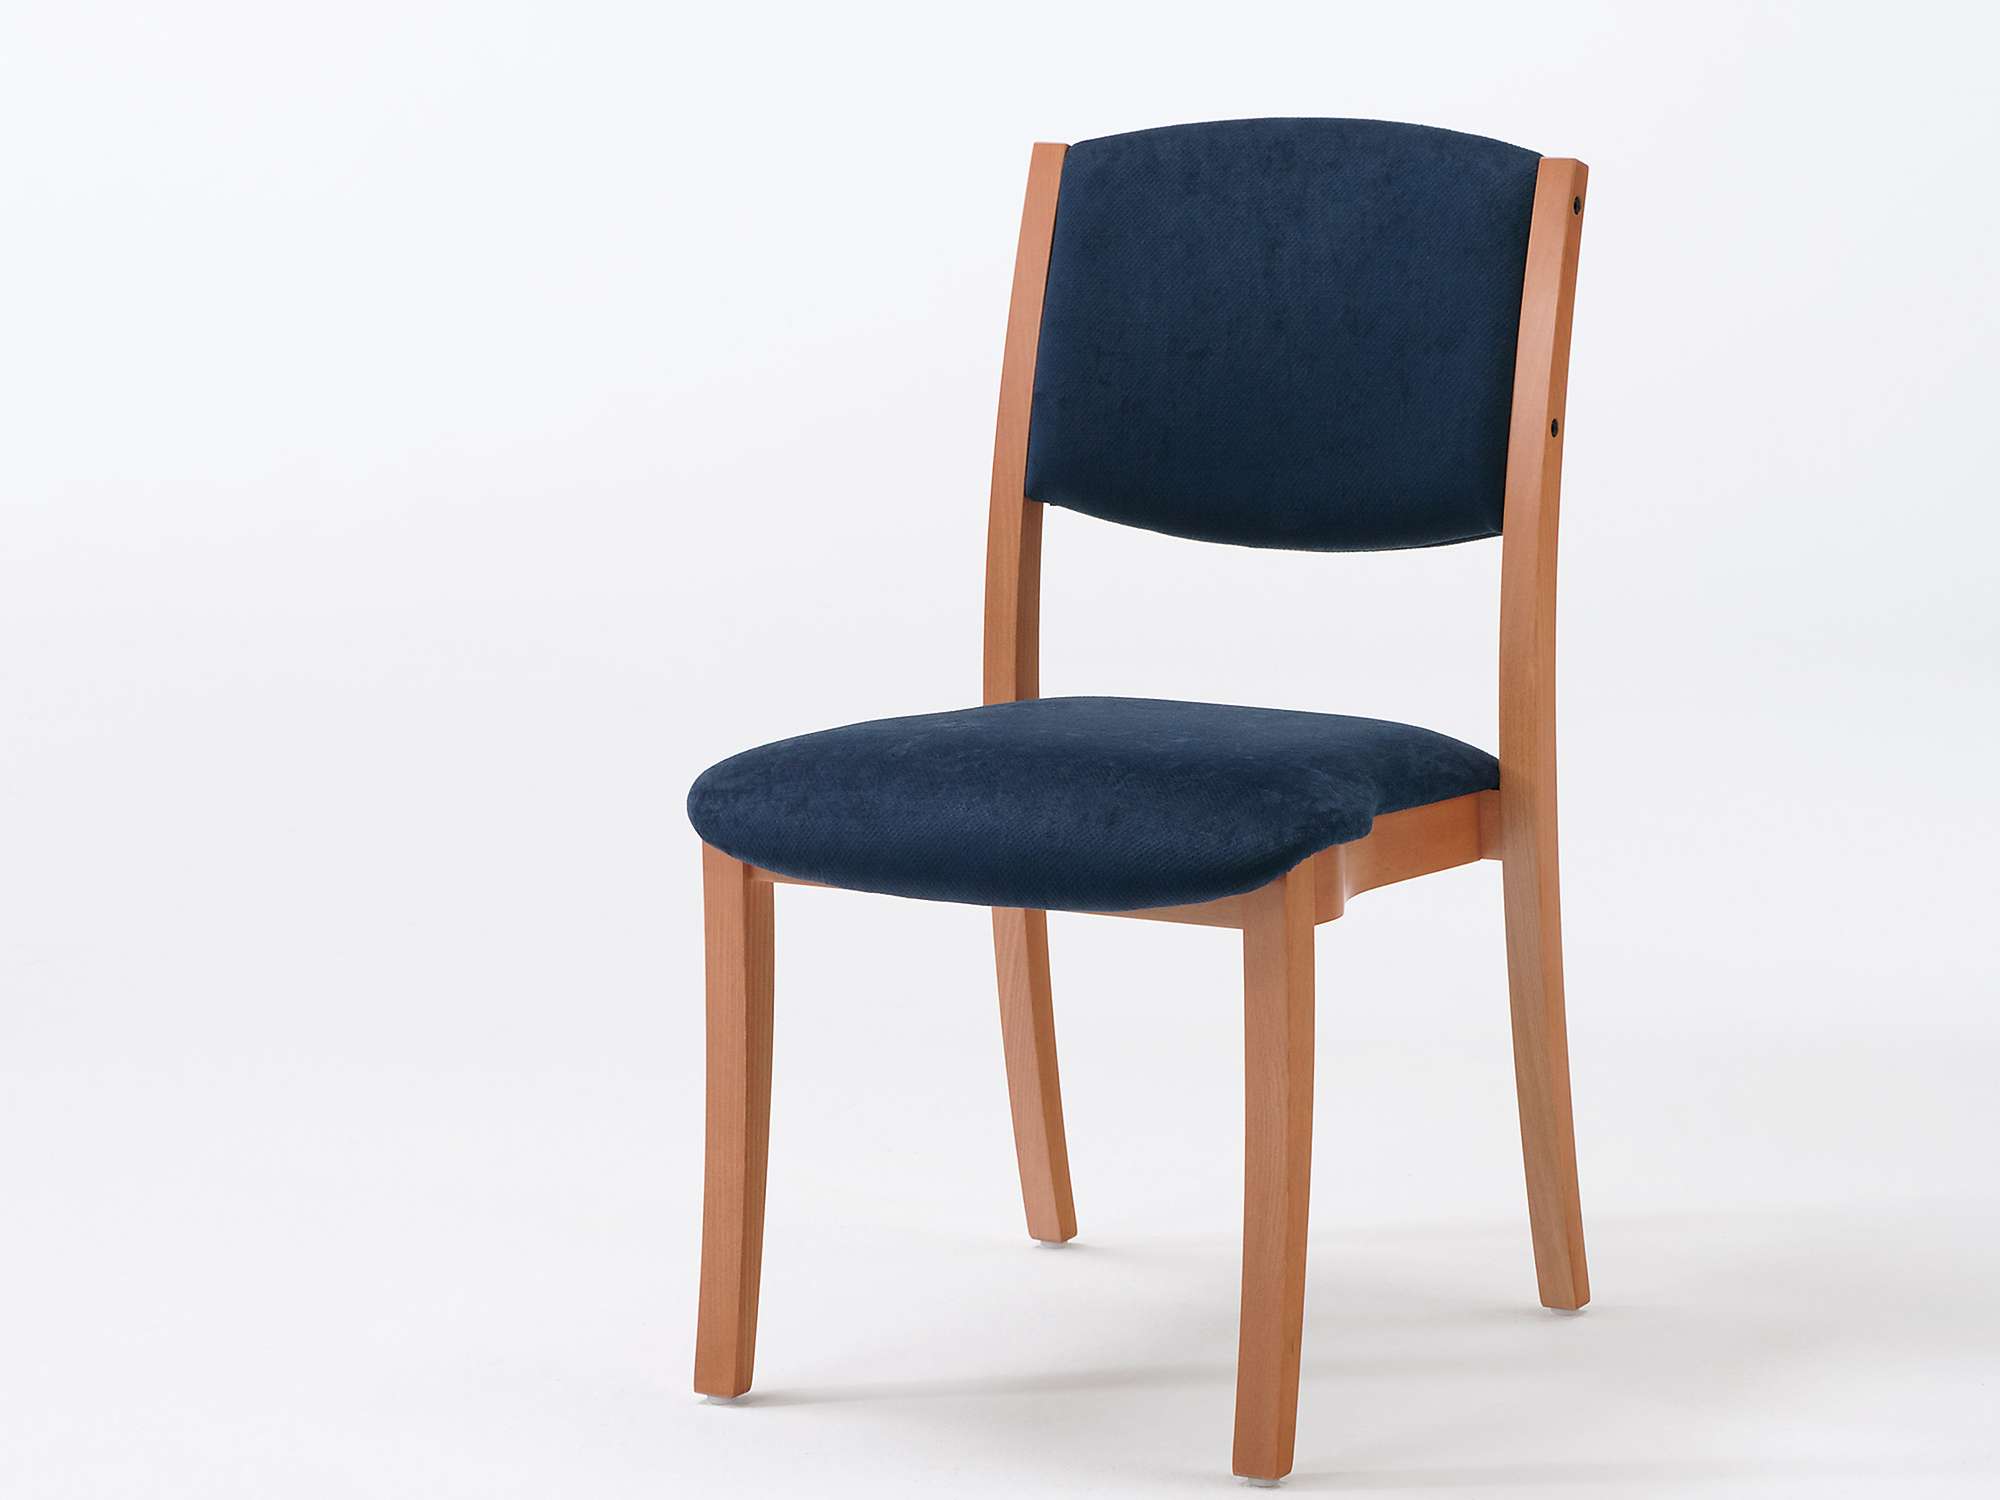 Model Sedego jako krzesło sztaplowane